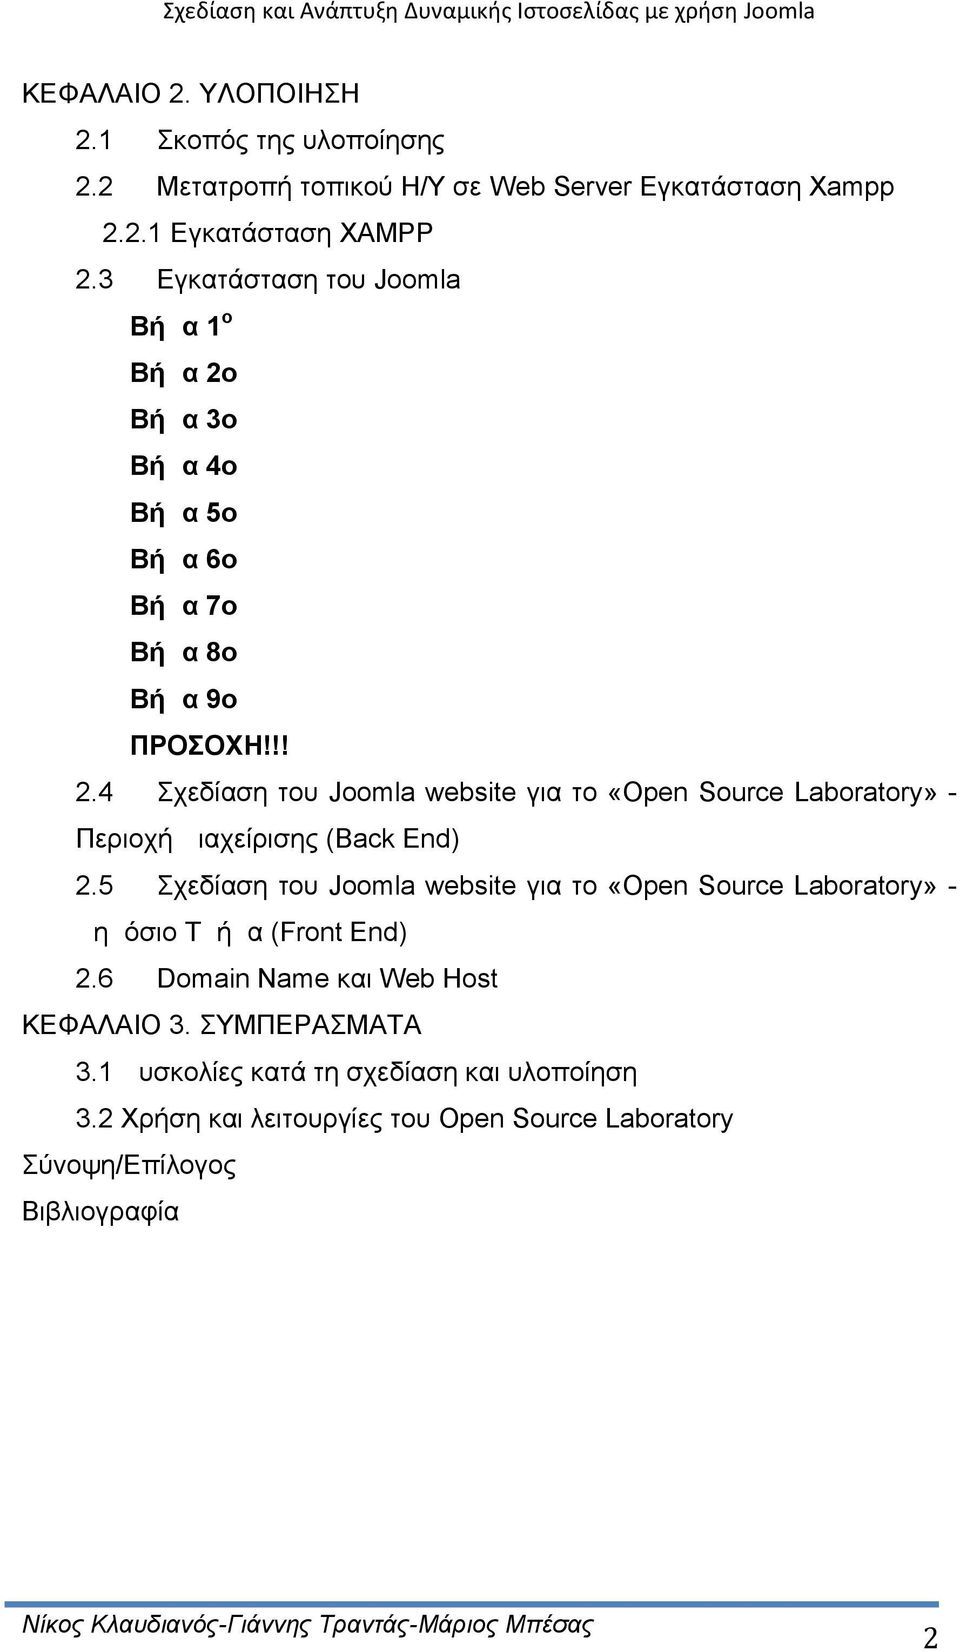 5 Σχεδίαση του Joomla website για το «Open Source Laboratory» - Δημόσιο Τμήμα (Front End) 2.6 Domain Name και Web Host ΚΕΦΑΛΑΙΟ 3. ΣΥΜΠΕΡΑΣΜΑΤΑ 3.